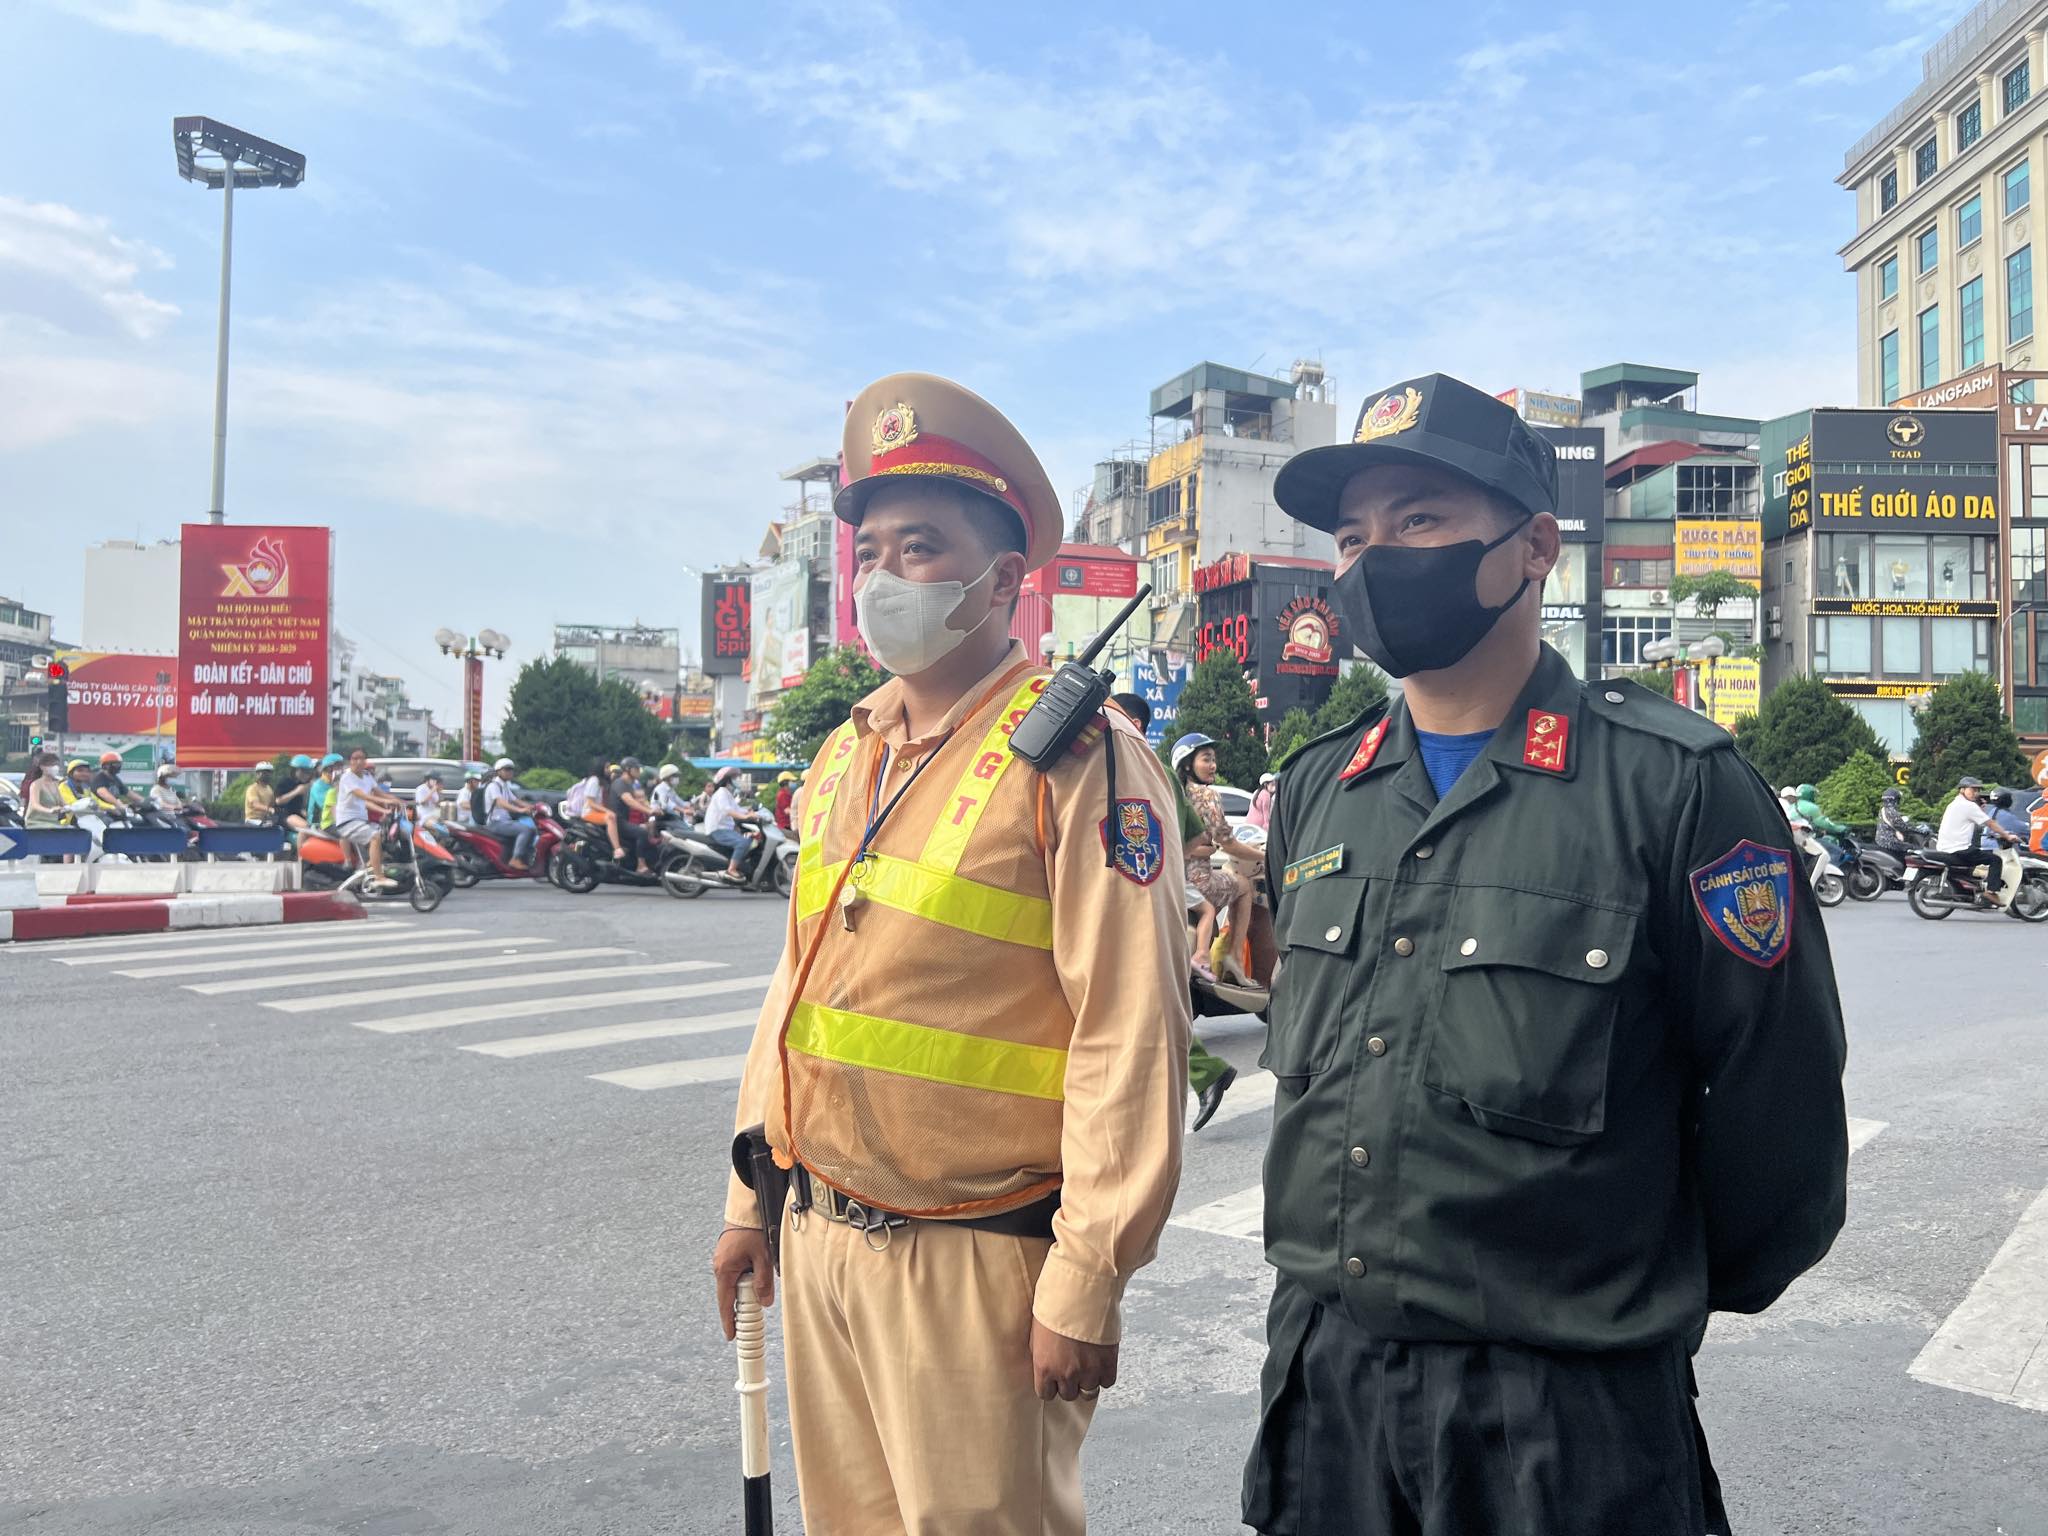 Ngày đầu 5 tổ công tác đặc biệt kiểm tra, xử lý vi phạm giao thông ở nội thành Hà Nội - Ảnh 2.